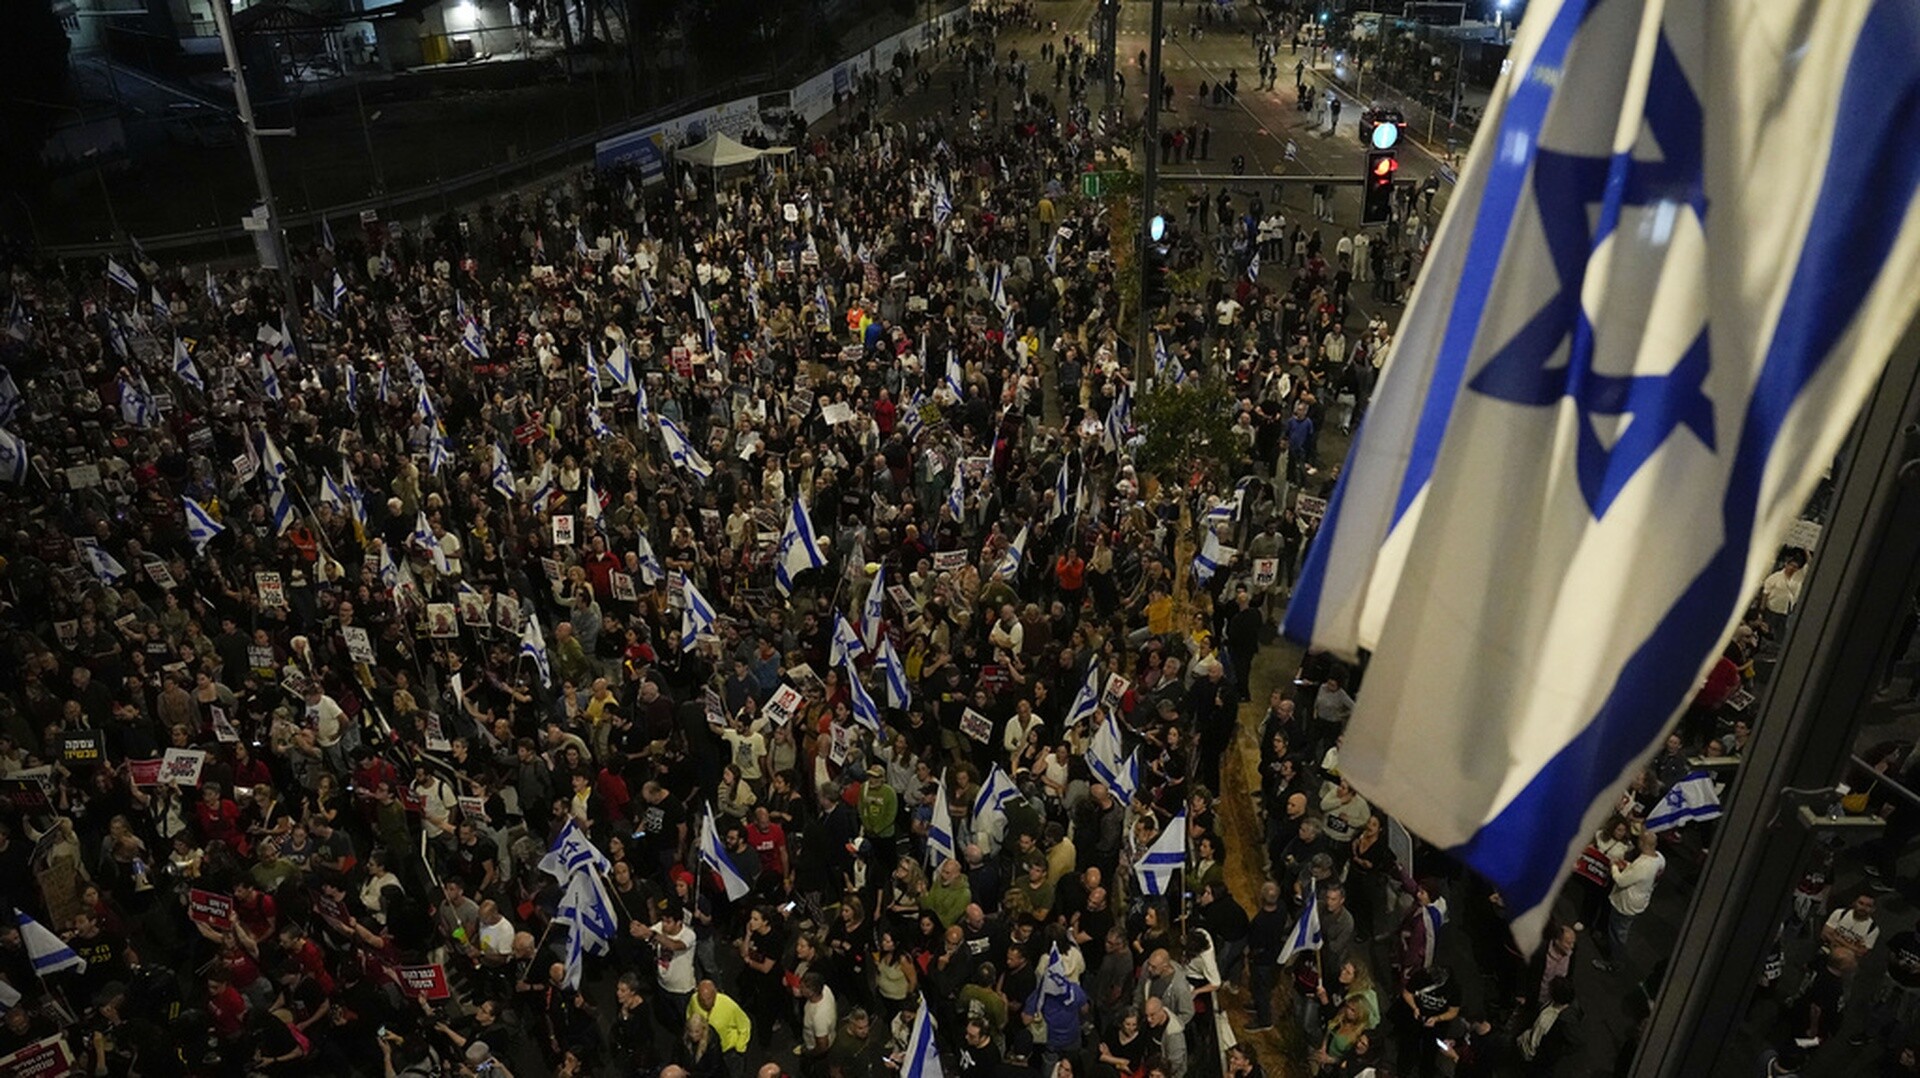 Πόλεμος στο Ισραήλ: Αυτοκίνητο έπεσε πάνω σε διαδηλωτές στο Τελ Αβίβ